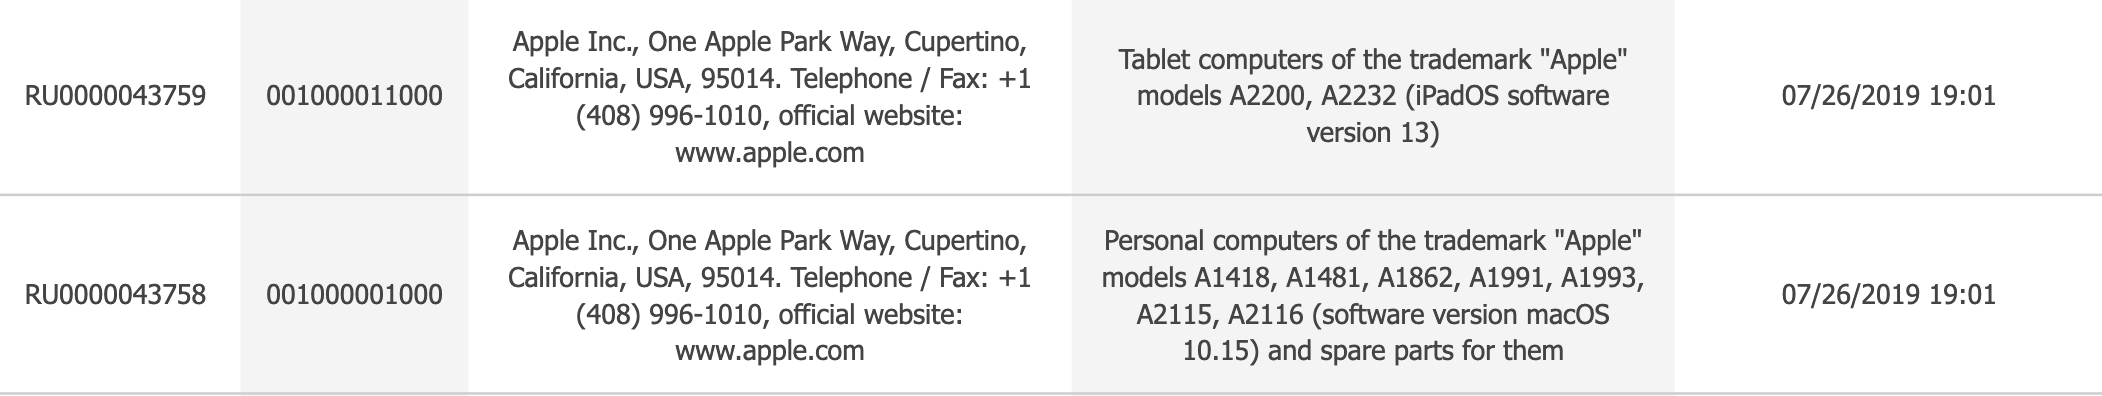 Nhiều mẫu iPad được đăng ký trong cơ sở dữ liệu tại lục địa Á-Âu, có cả iPad 10.2-inch mới